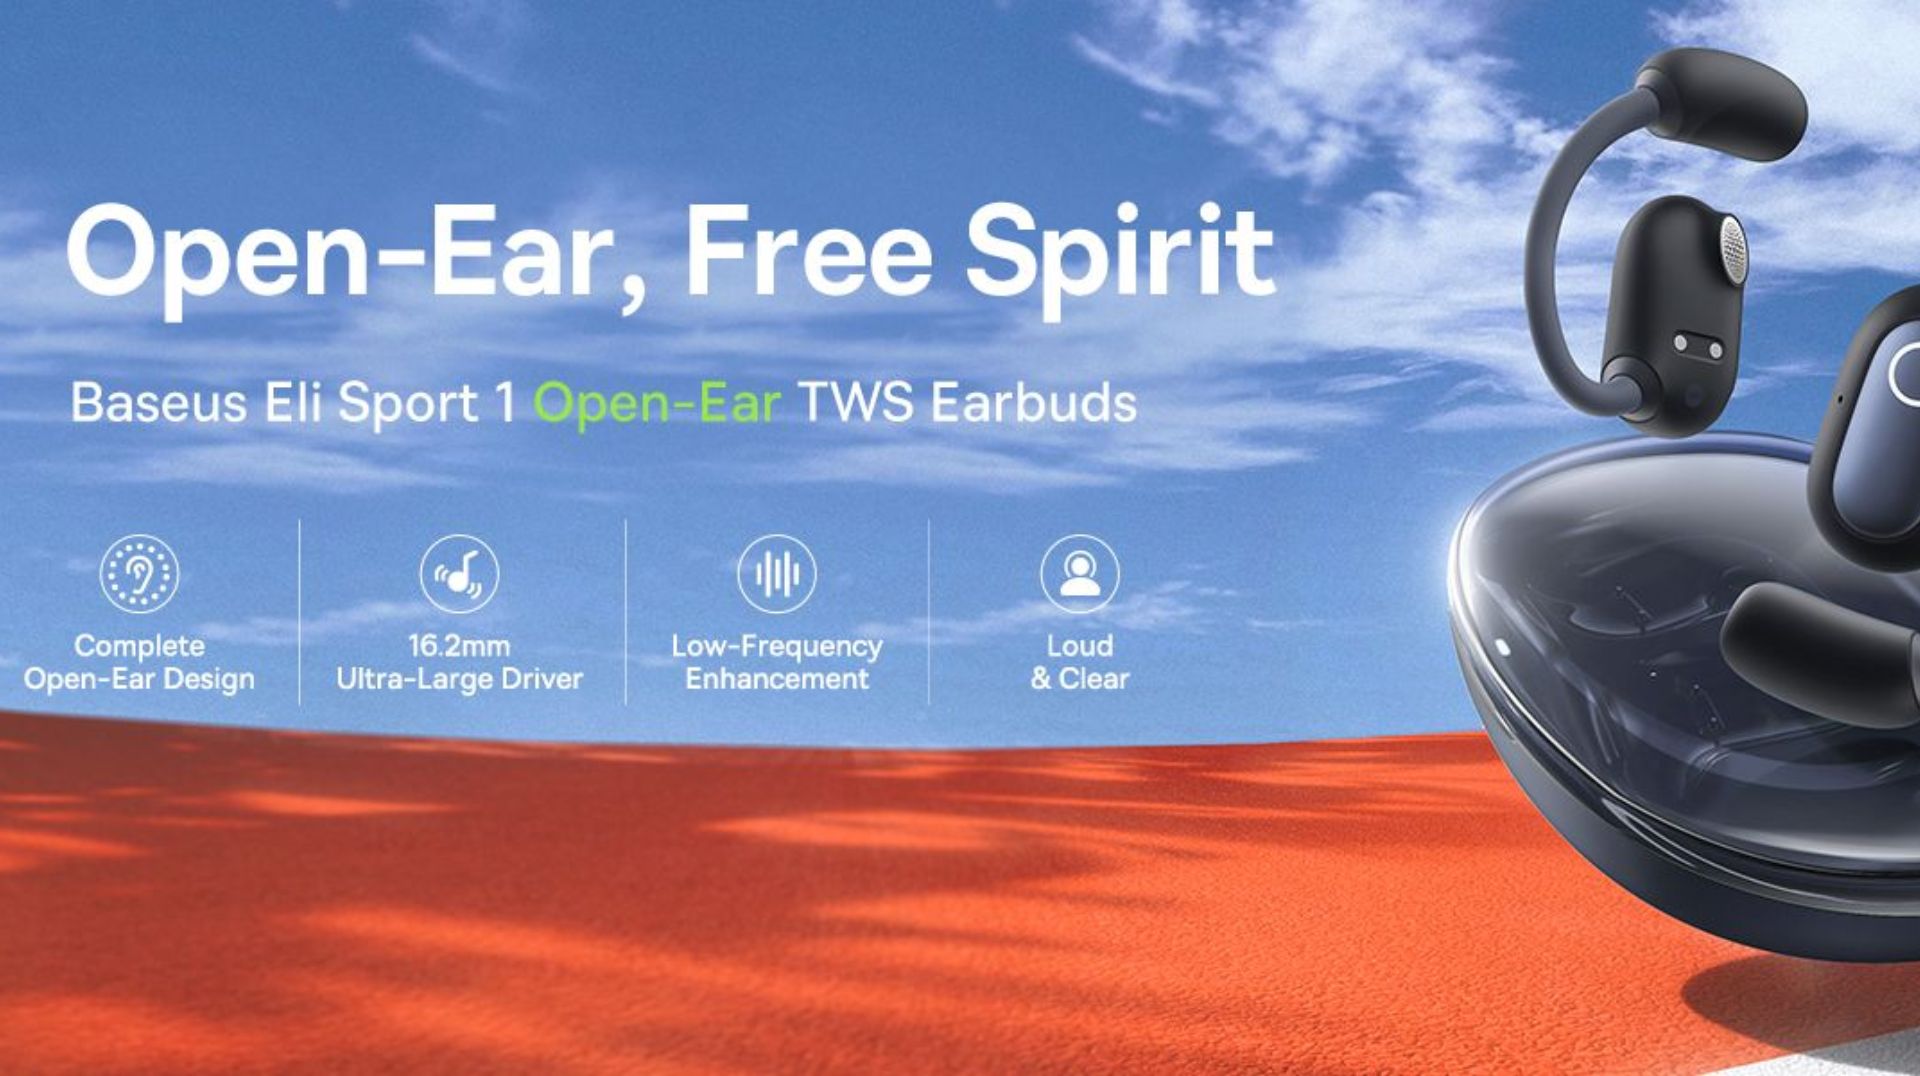 Baseus Eli Sport 1 Open-Ear TWS Earbuds Wireless